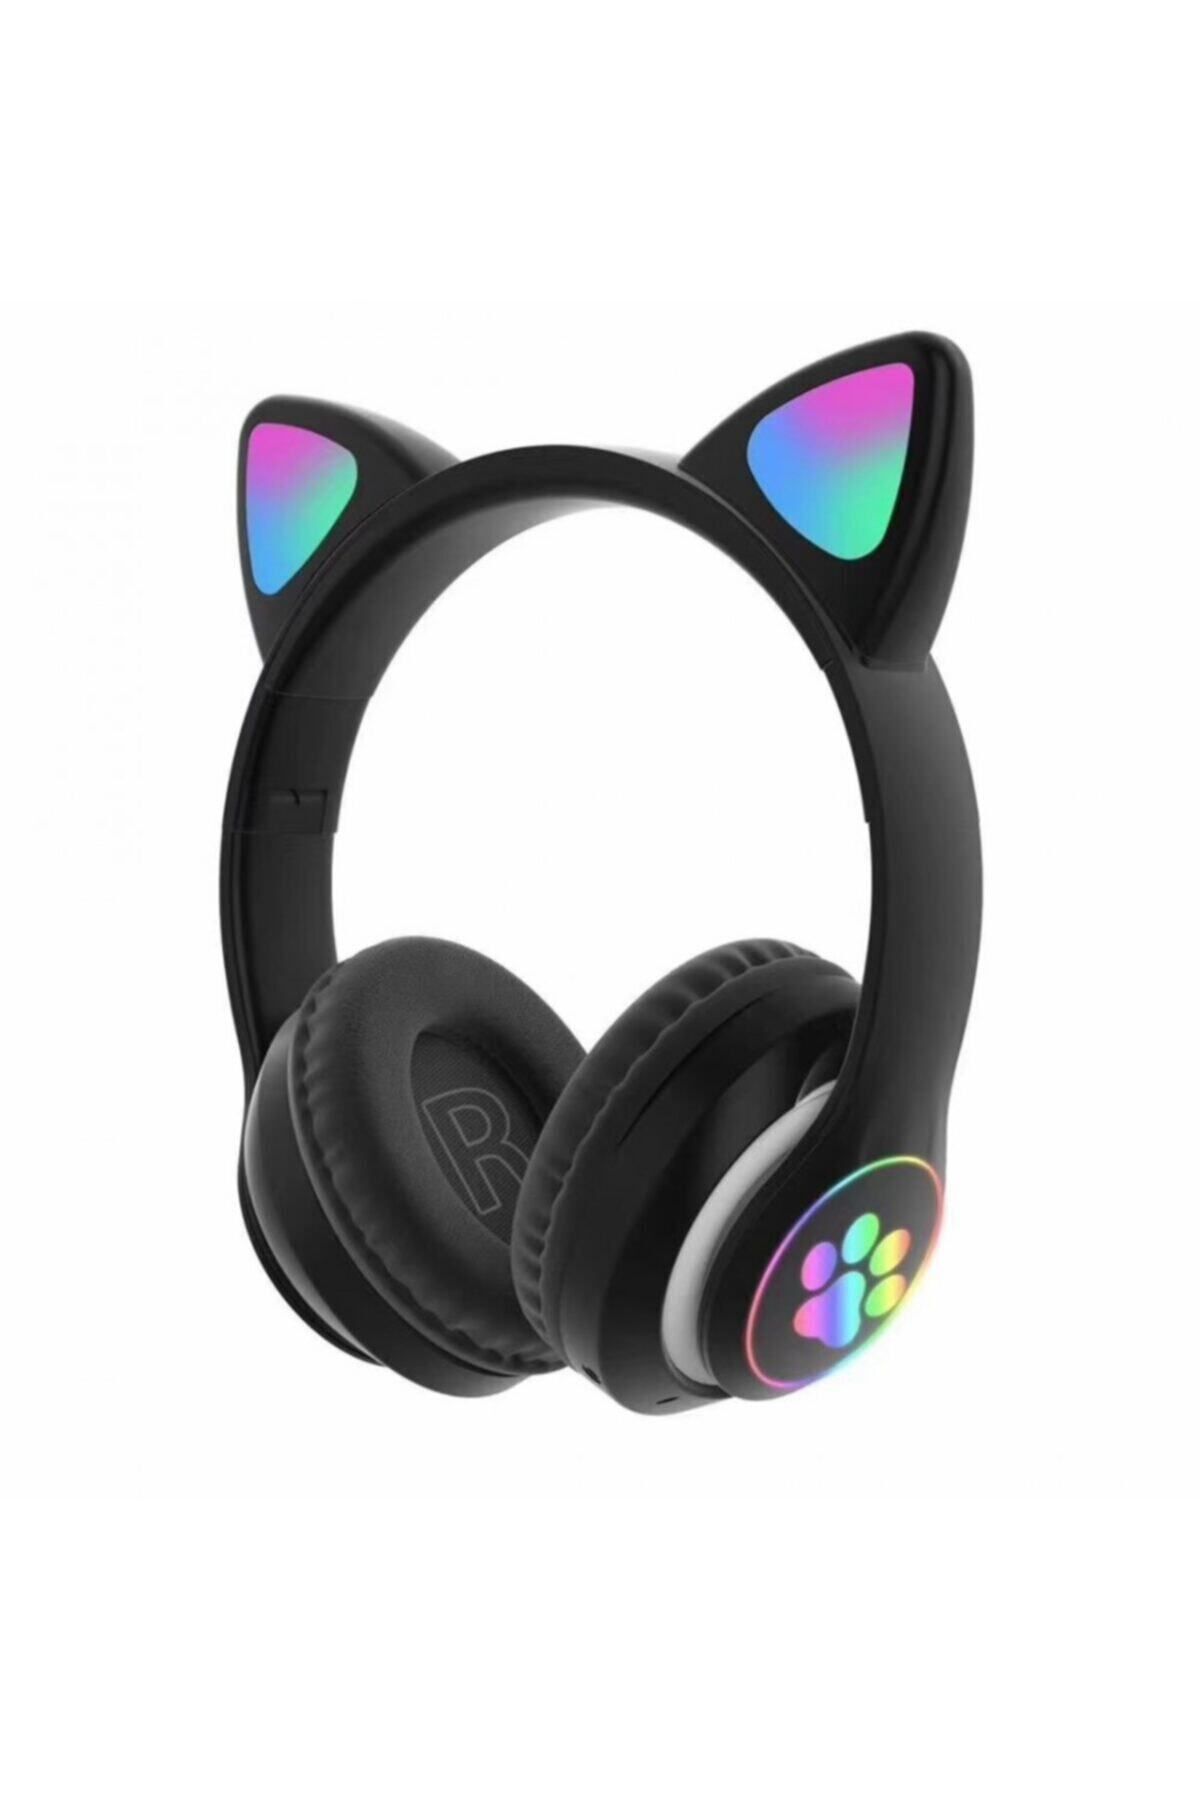 Teknoloji Gelsin Siyah Bluetooth 5.0 Mikrofonlu Kablosuz Kulaklık Yüksek Ses Akıllı Led Işıklı Kedi Patili Rgb